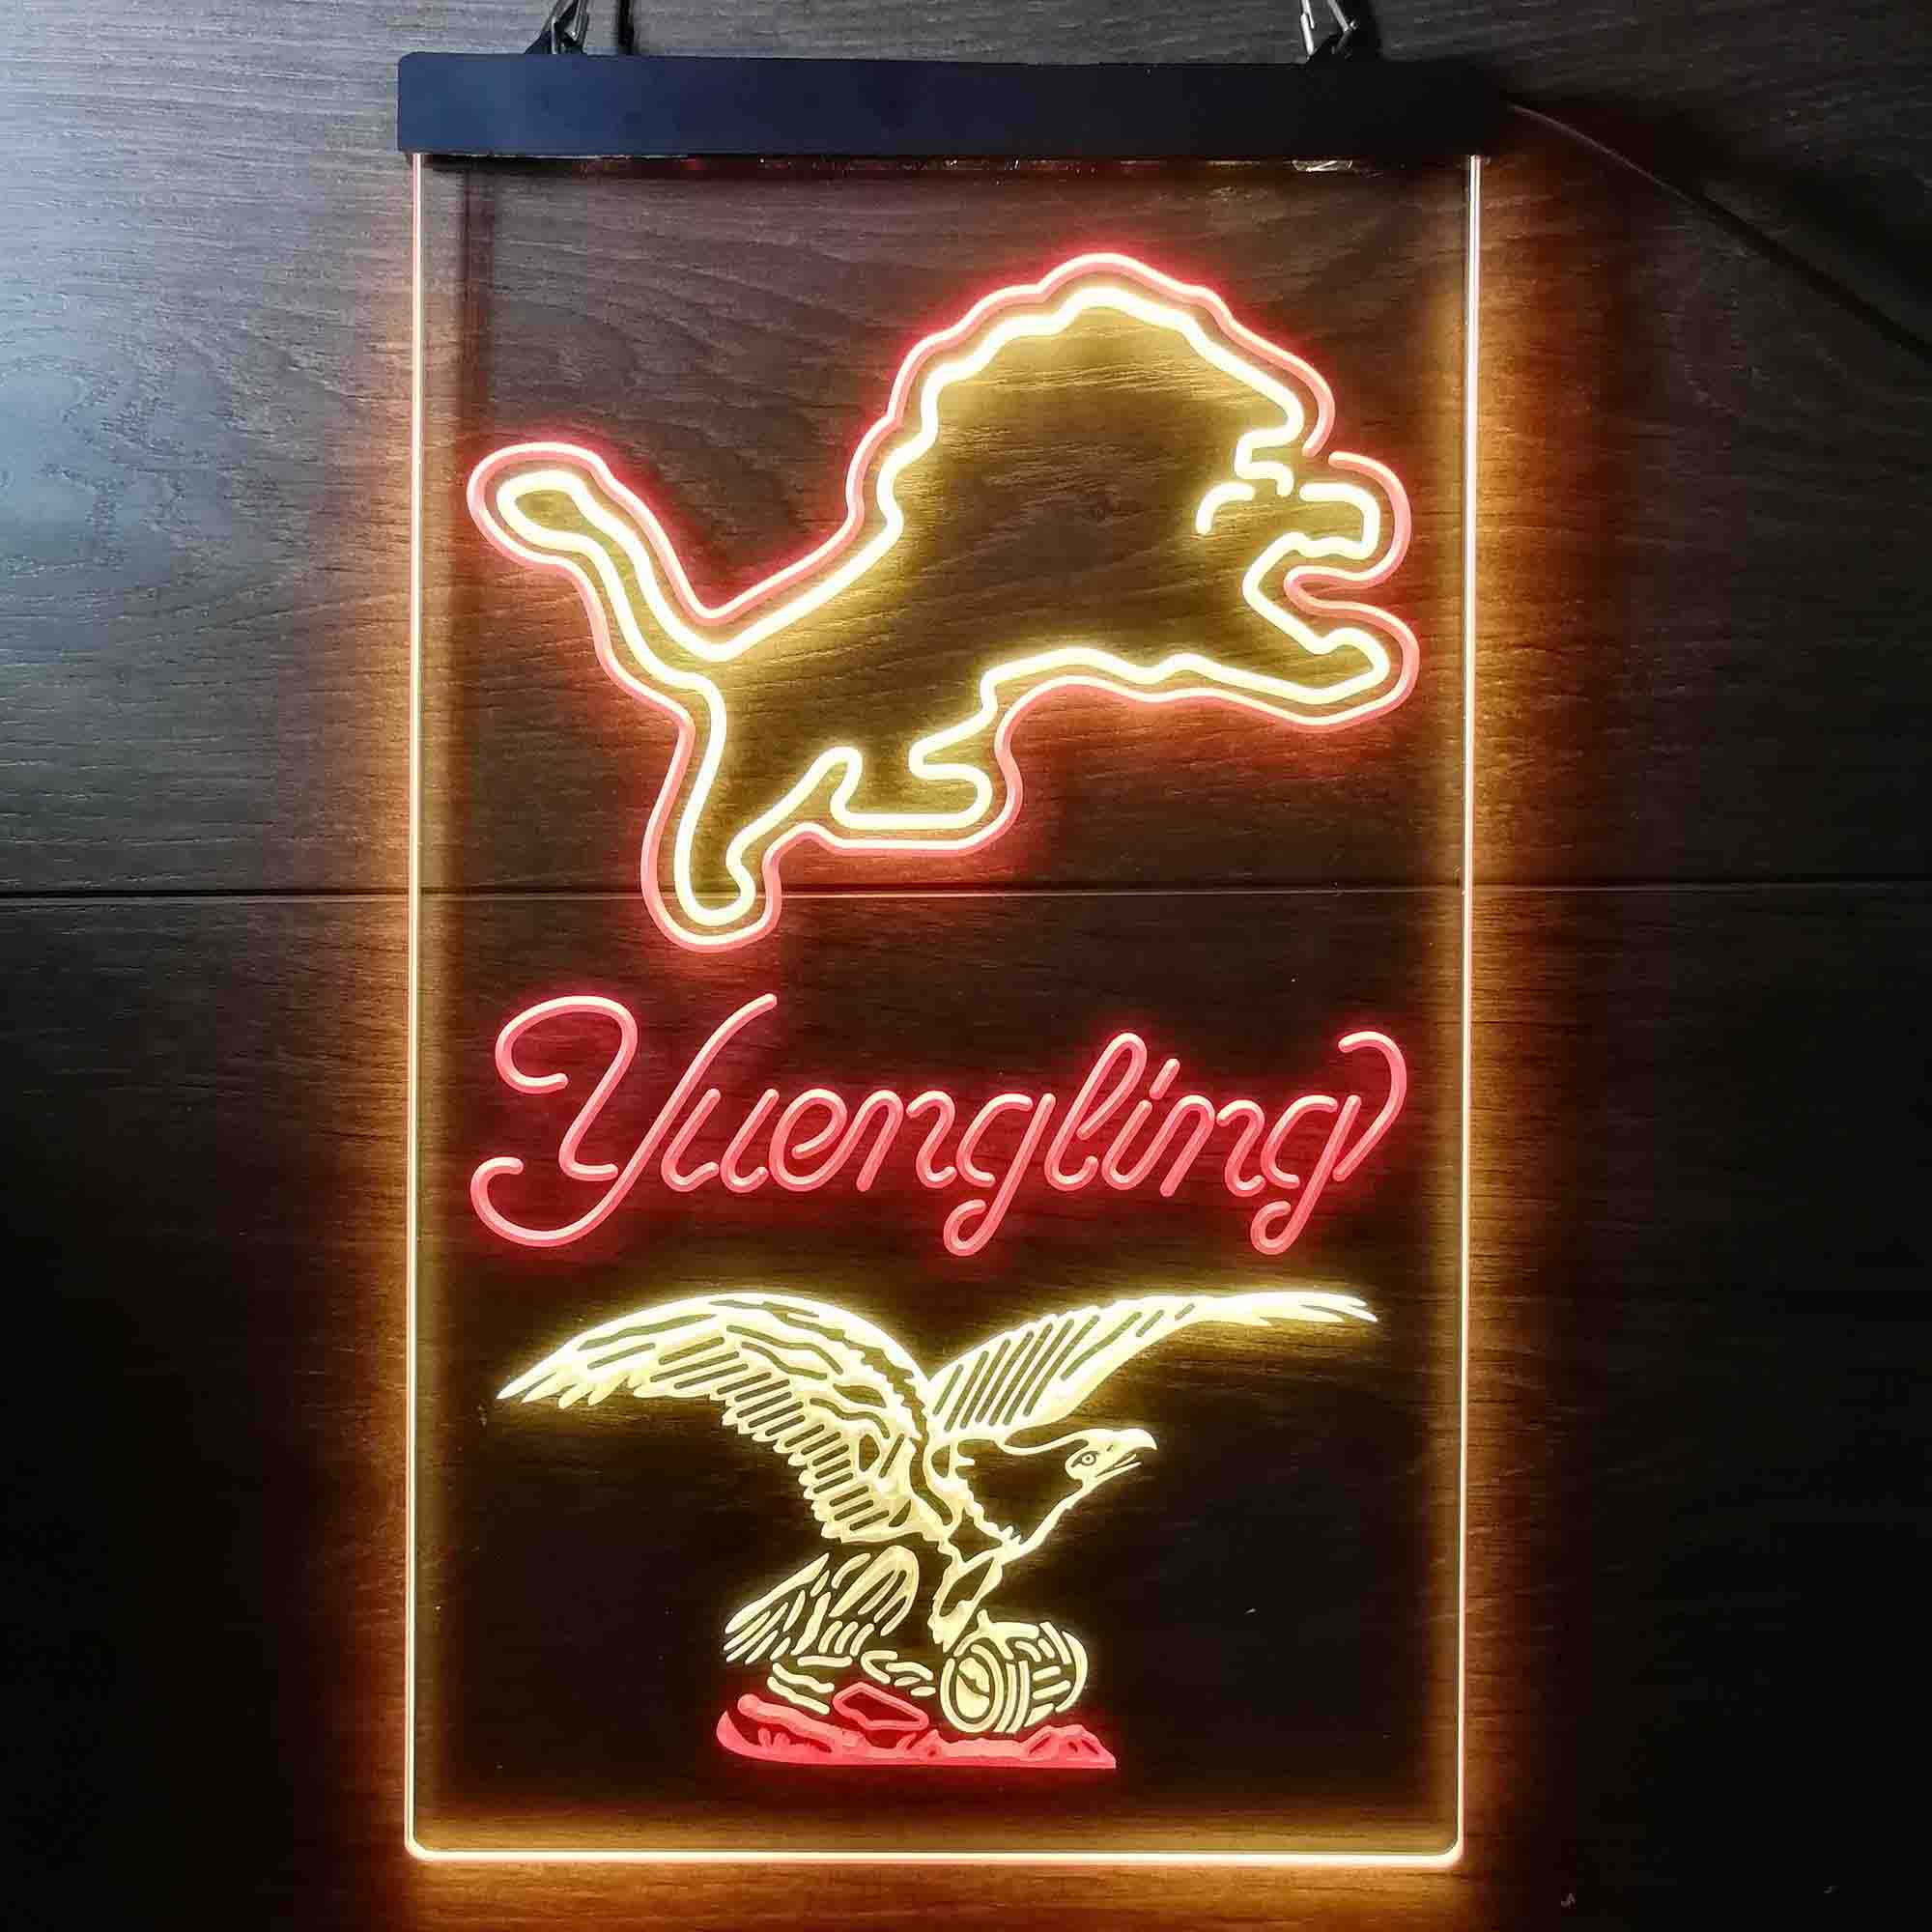 Yuengling Bar Detroit Lions Est. 1934 LED Neon Sign